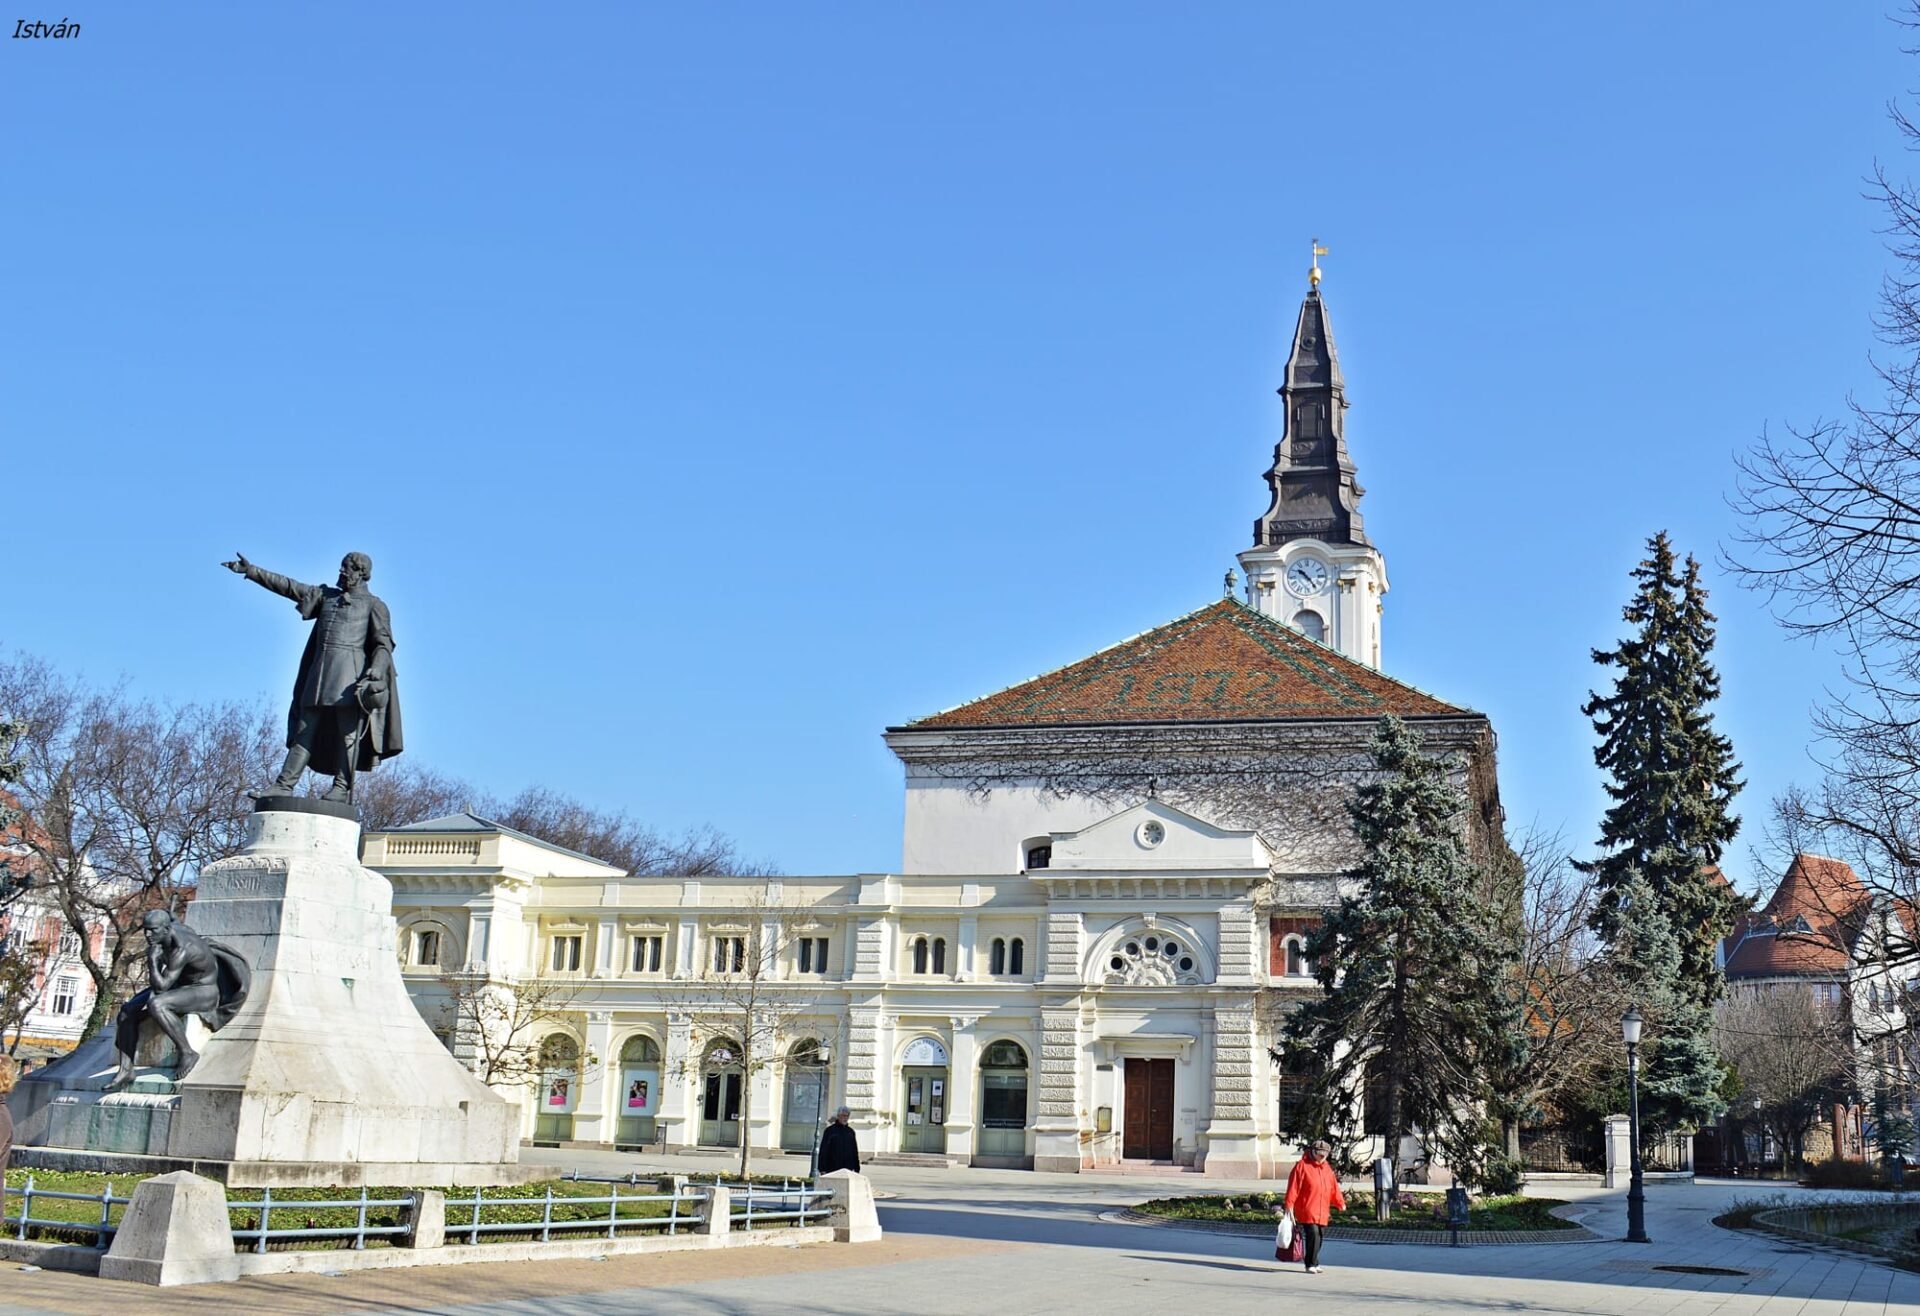 Kossuth szobor, háttérben a Kecskeméti Médiacentrum által használt épülettel